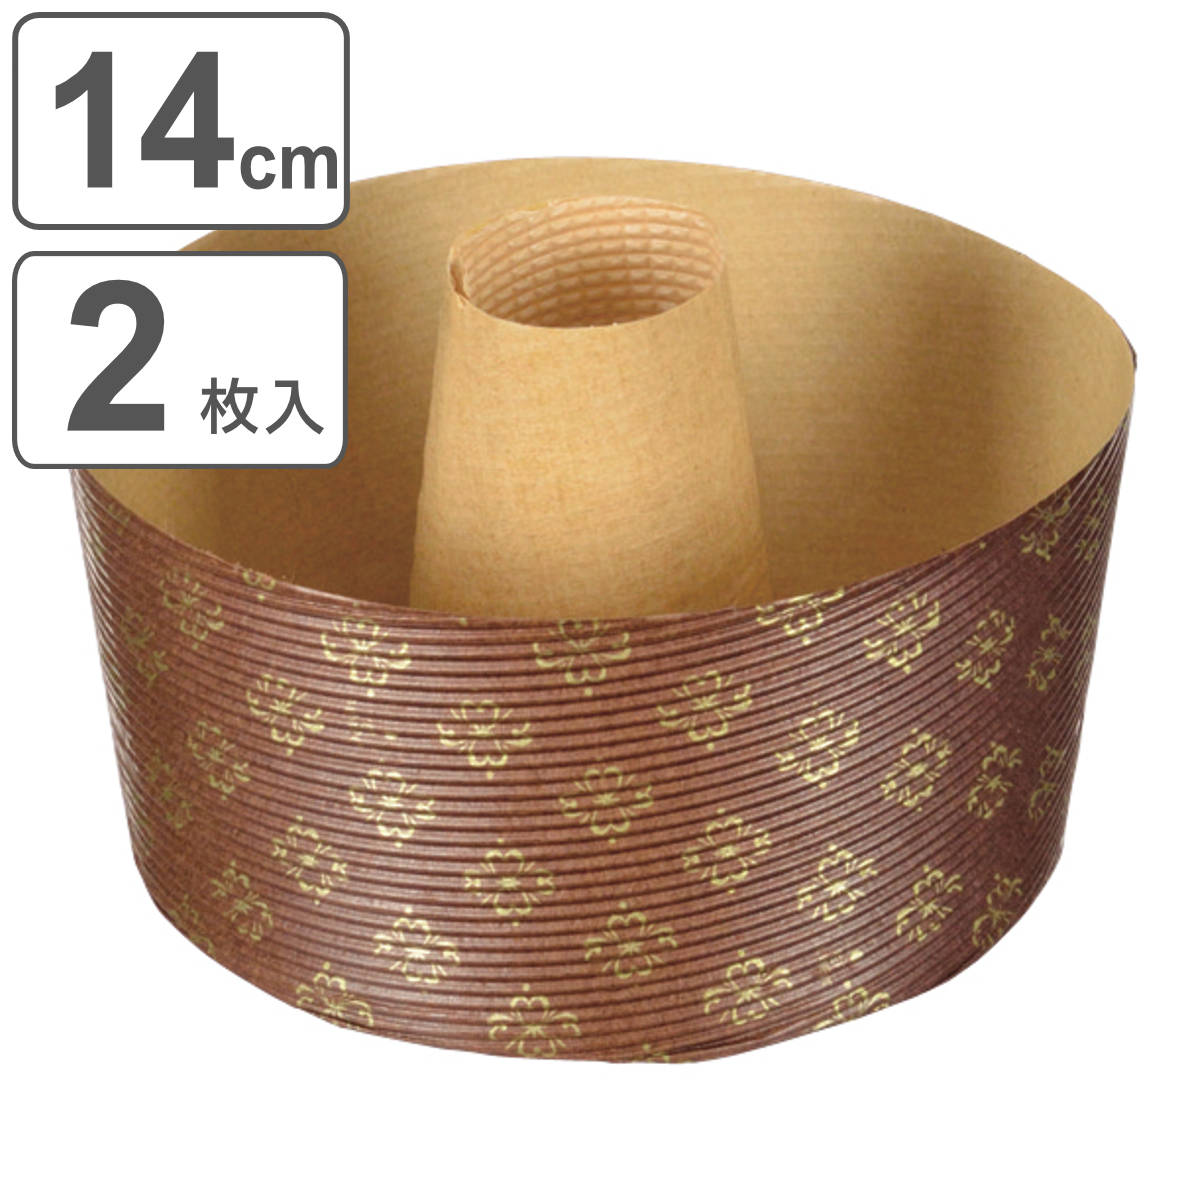 シフォンケーキ型 14cm ラフィネ 紙